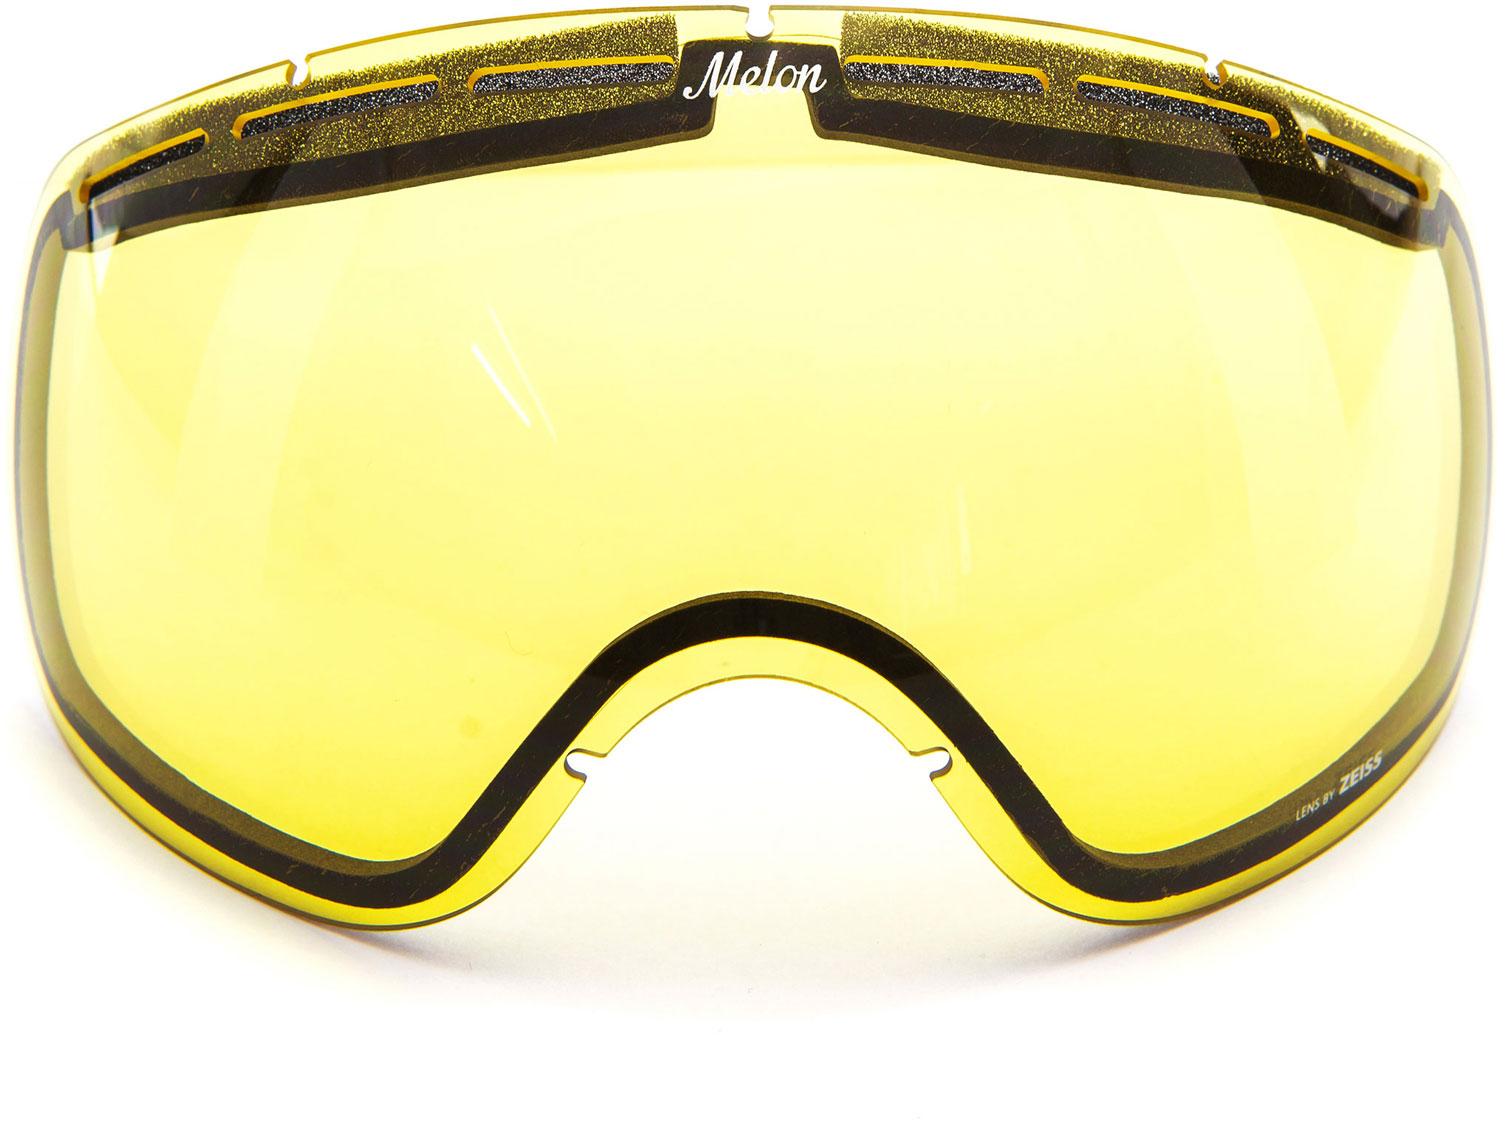 Men’s ski goggles